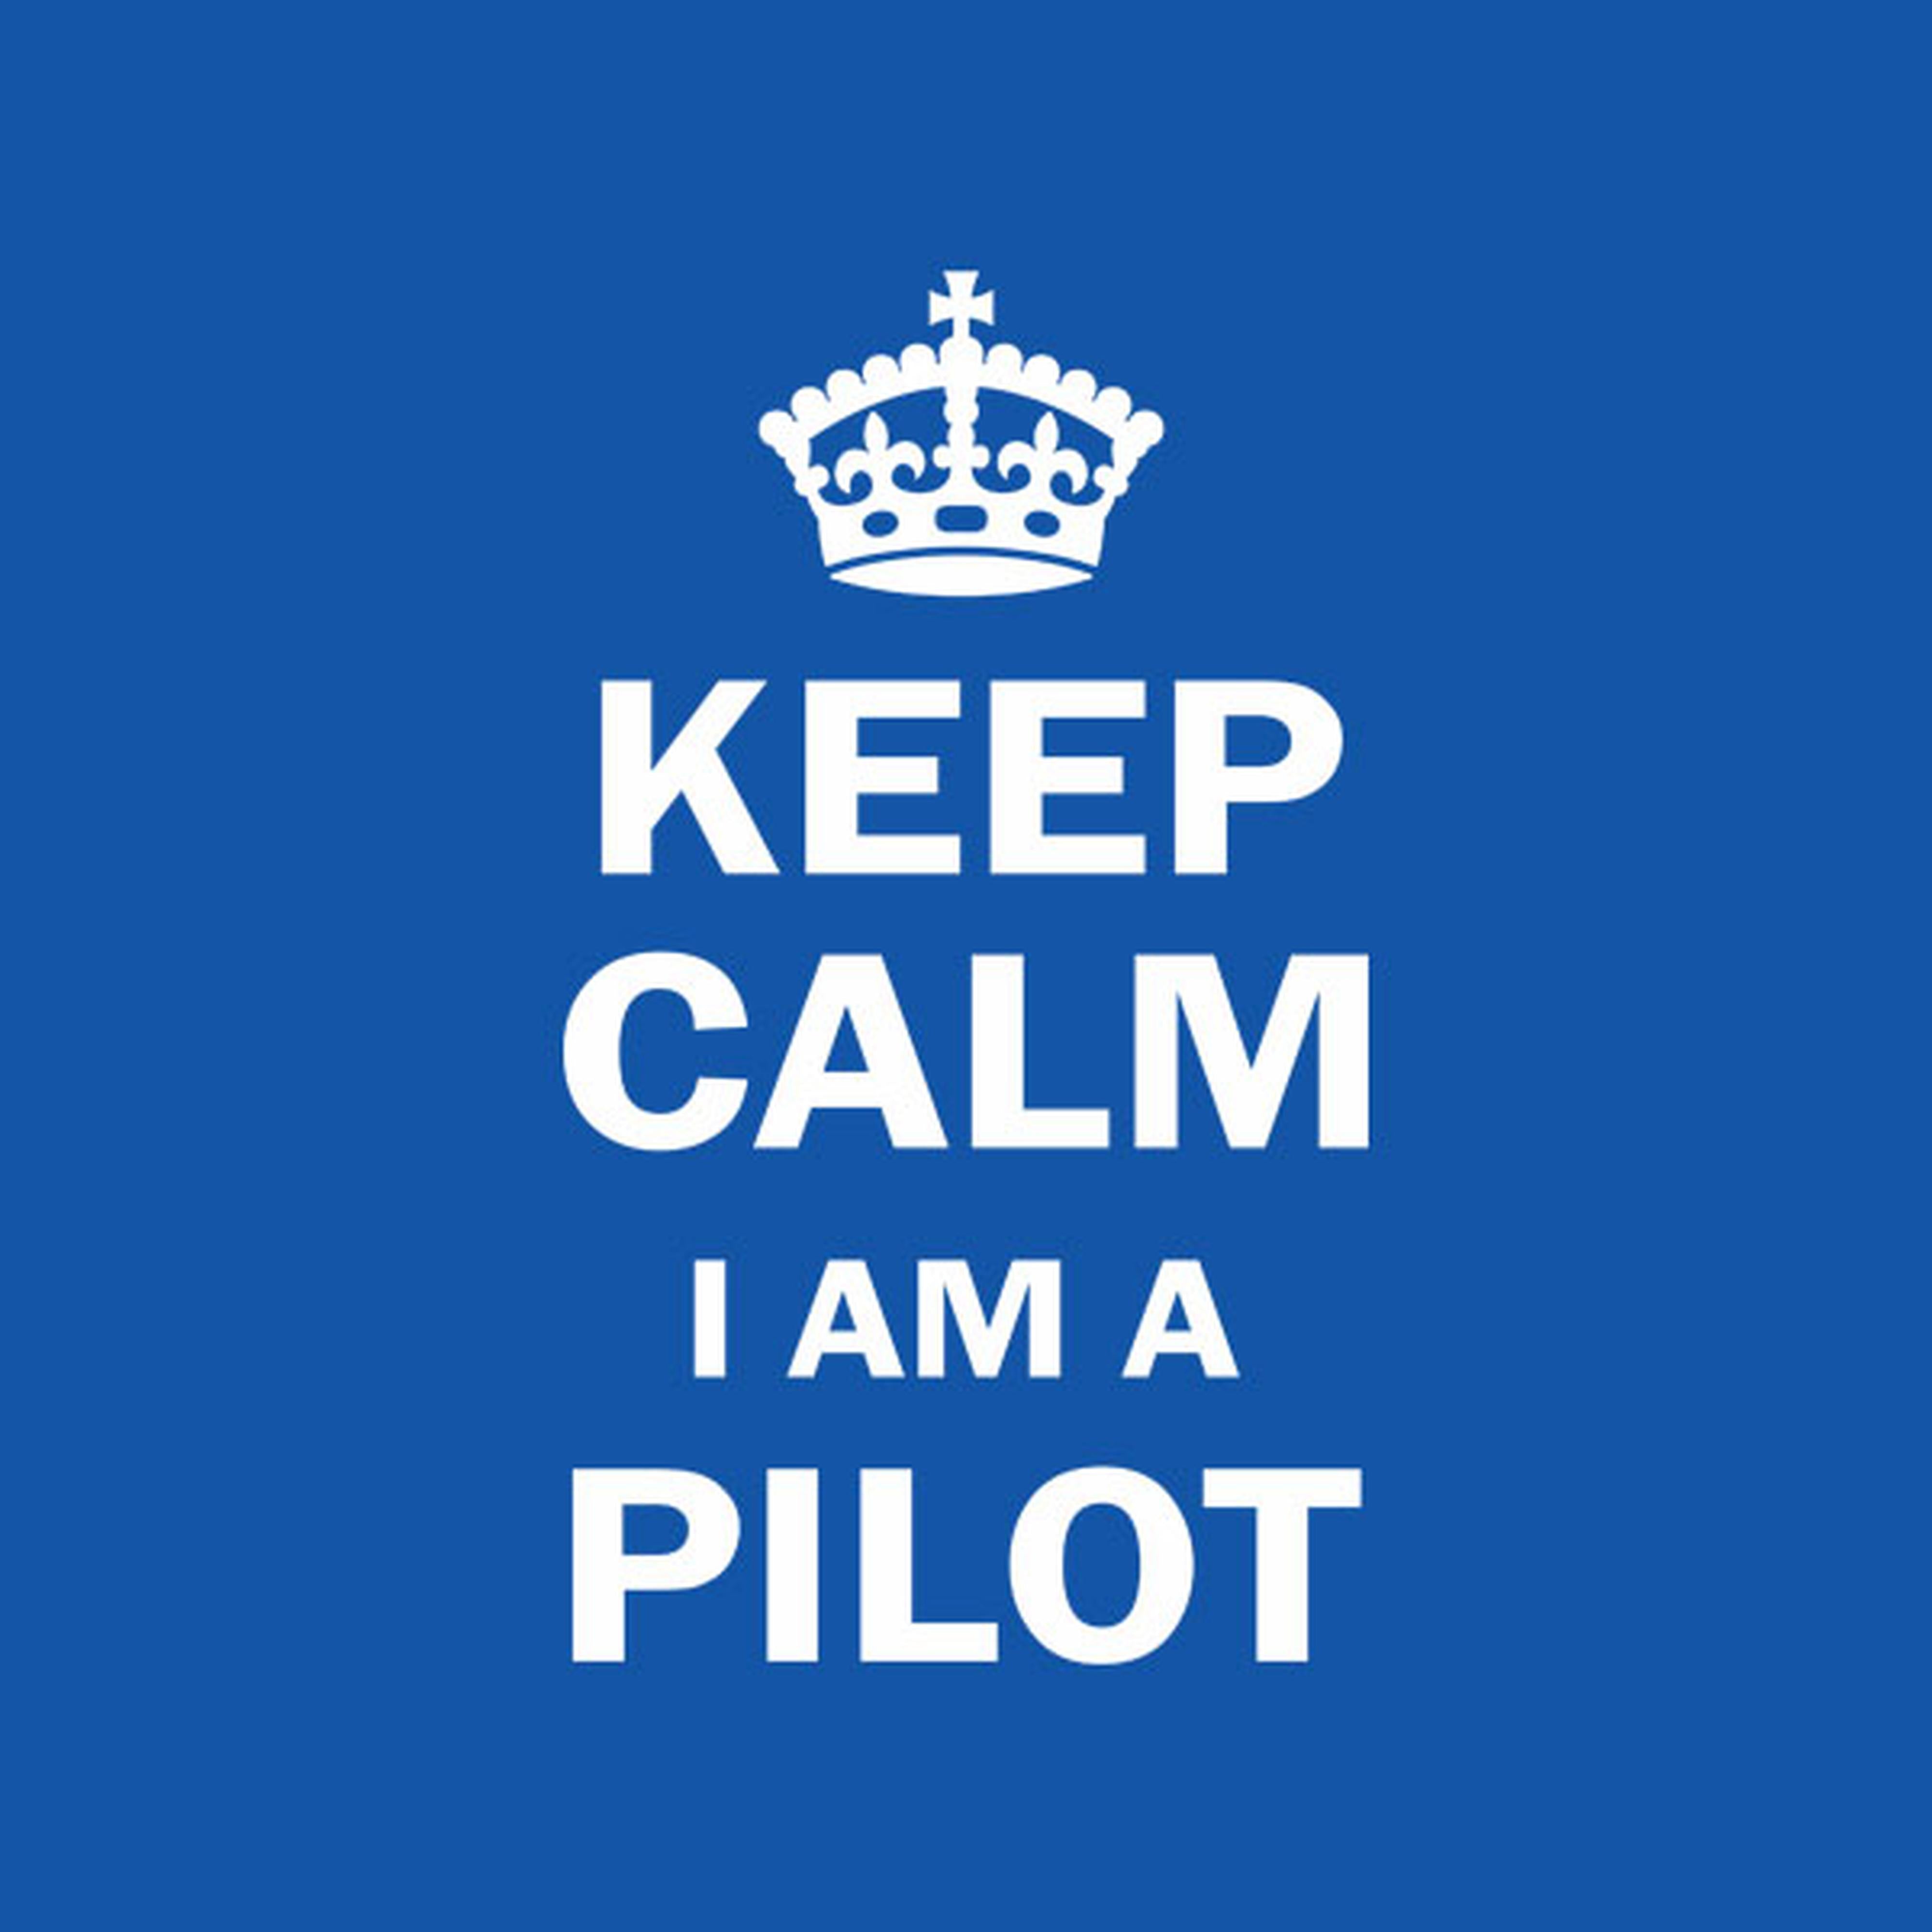 Keep calm I am a pilot - T-shirt